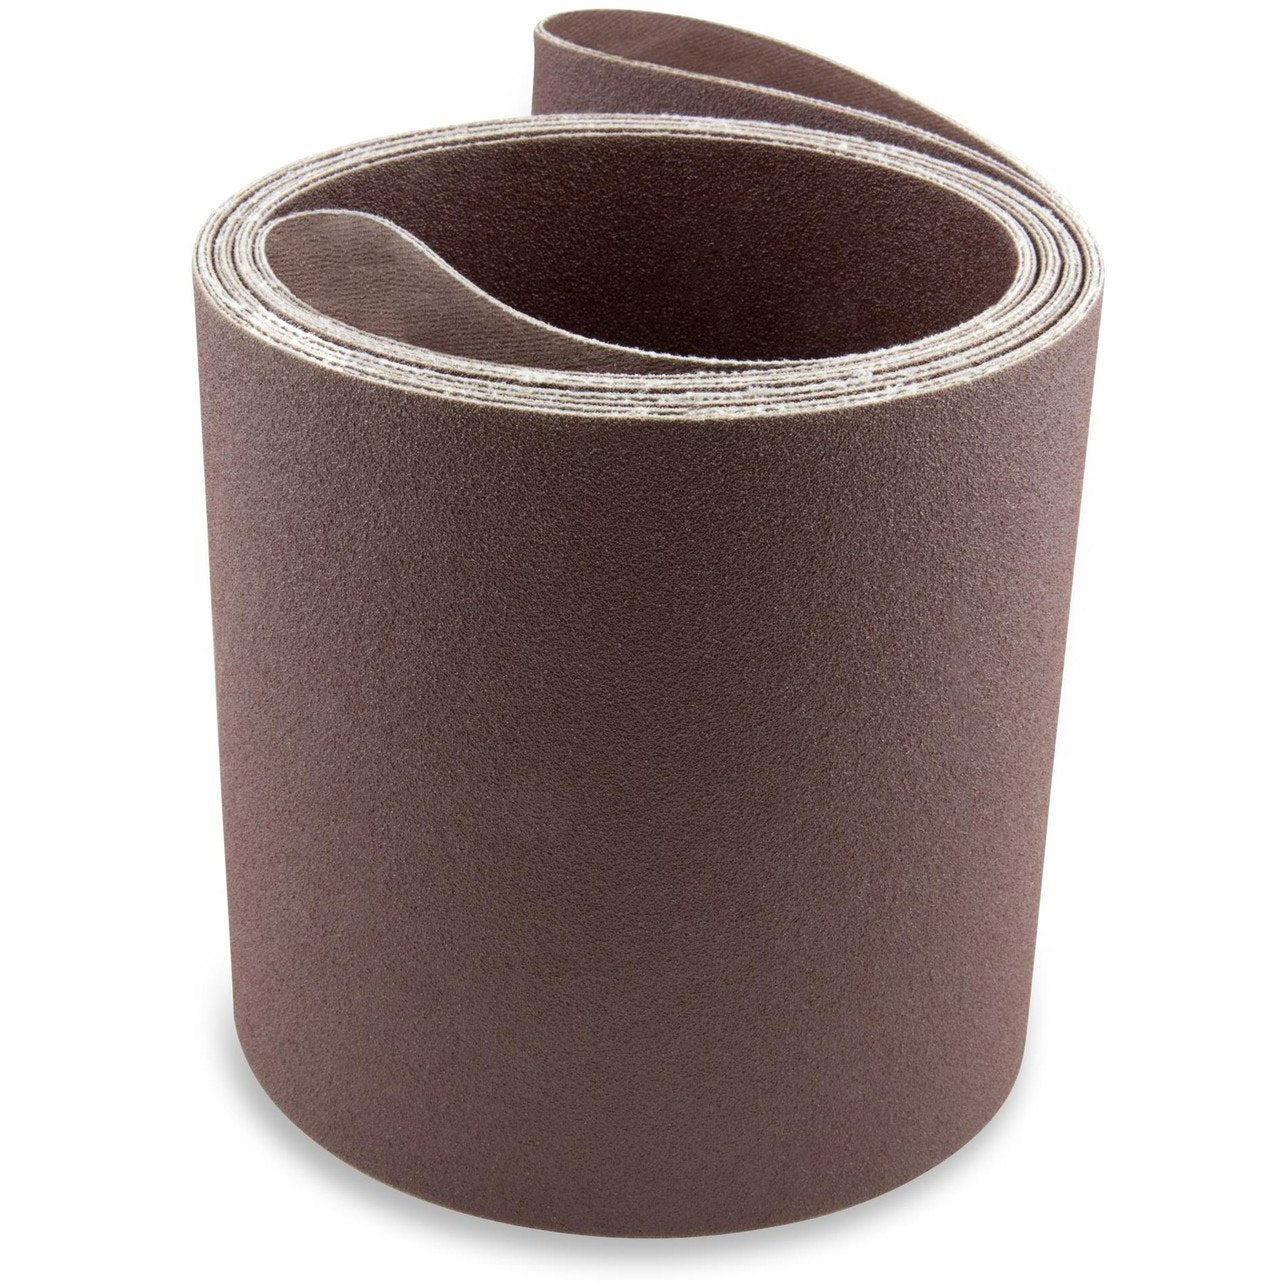 6 X 186 Inch Aluminum Oxide Sanding Belts, 2 Pack - Red Label Abrasives